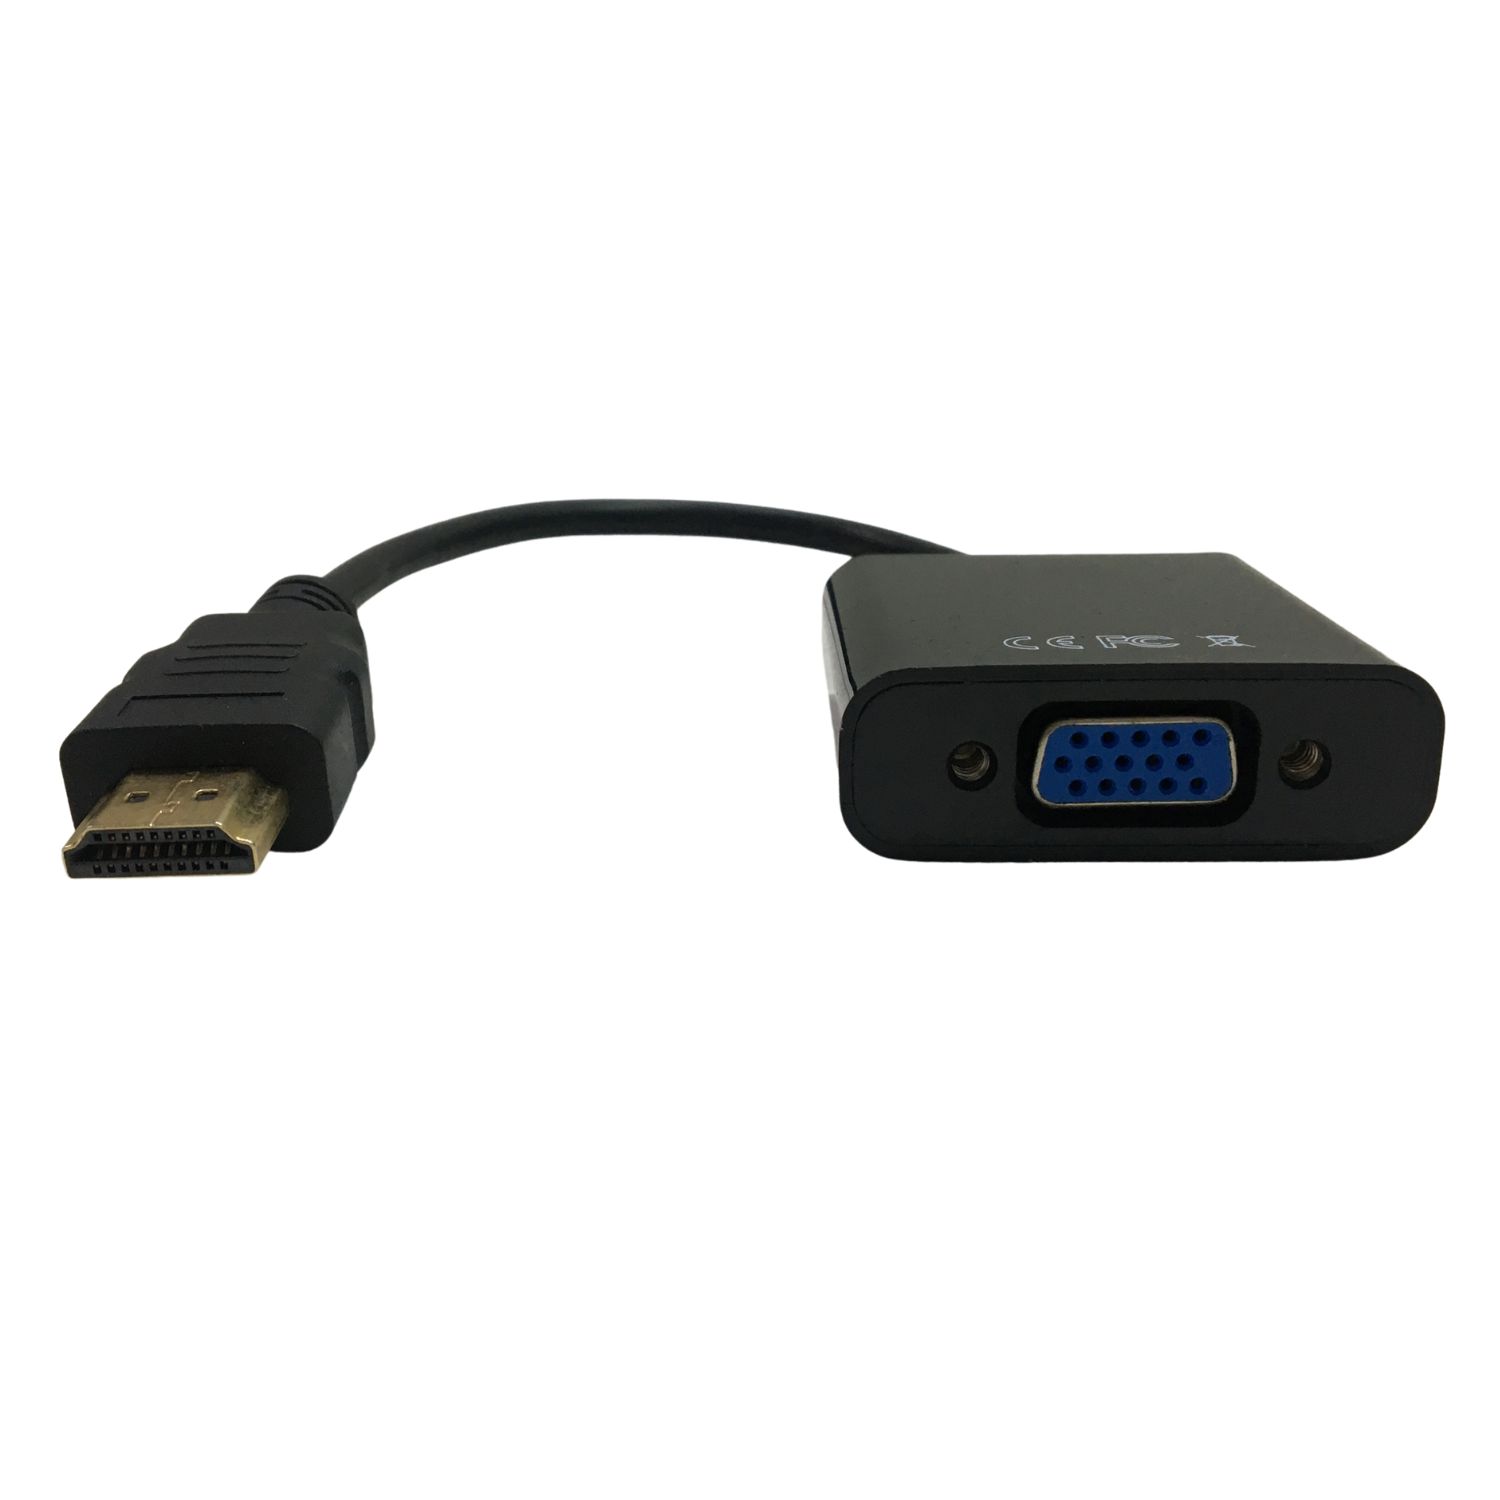 [少量現貨dd] ONTEN 歐騰 HDMI 轉 VGA轉換器 15cm 轉接頭 轉接線 聯想/華碩/宏碁/Sony/戴爾 筆記型電腦連接投影機/顯示器 (UJ1)I13